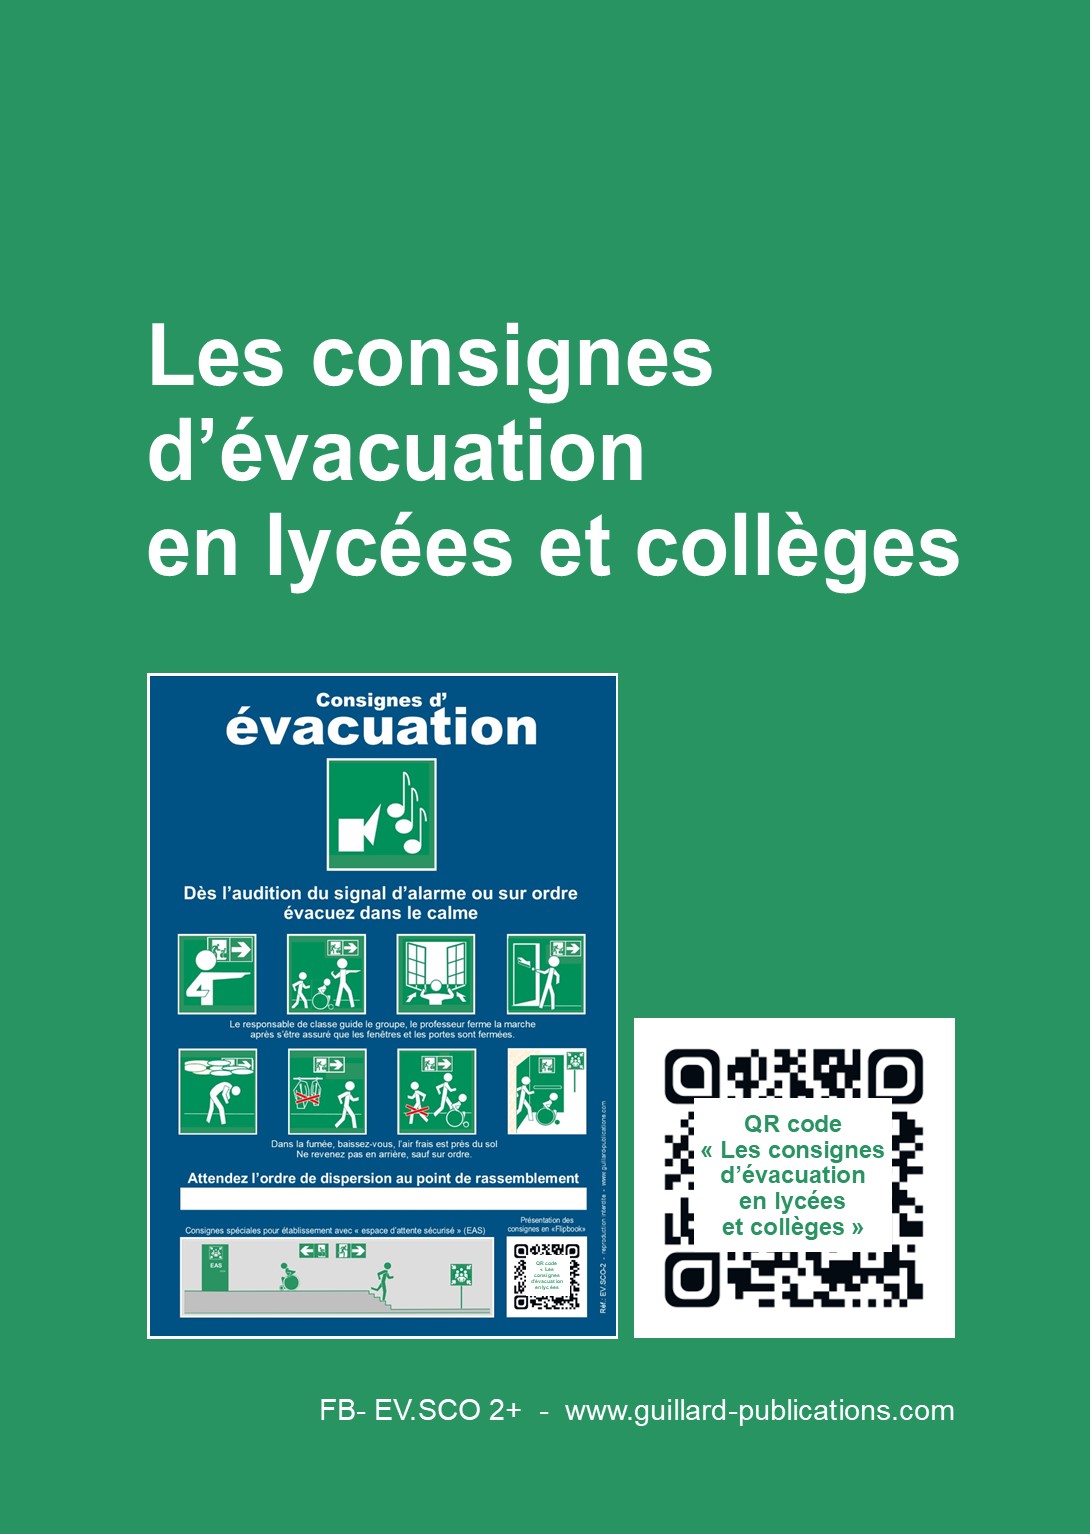 FLIPBOOK - Consignes d'evacuation en Lycees et colleges 